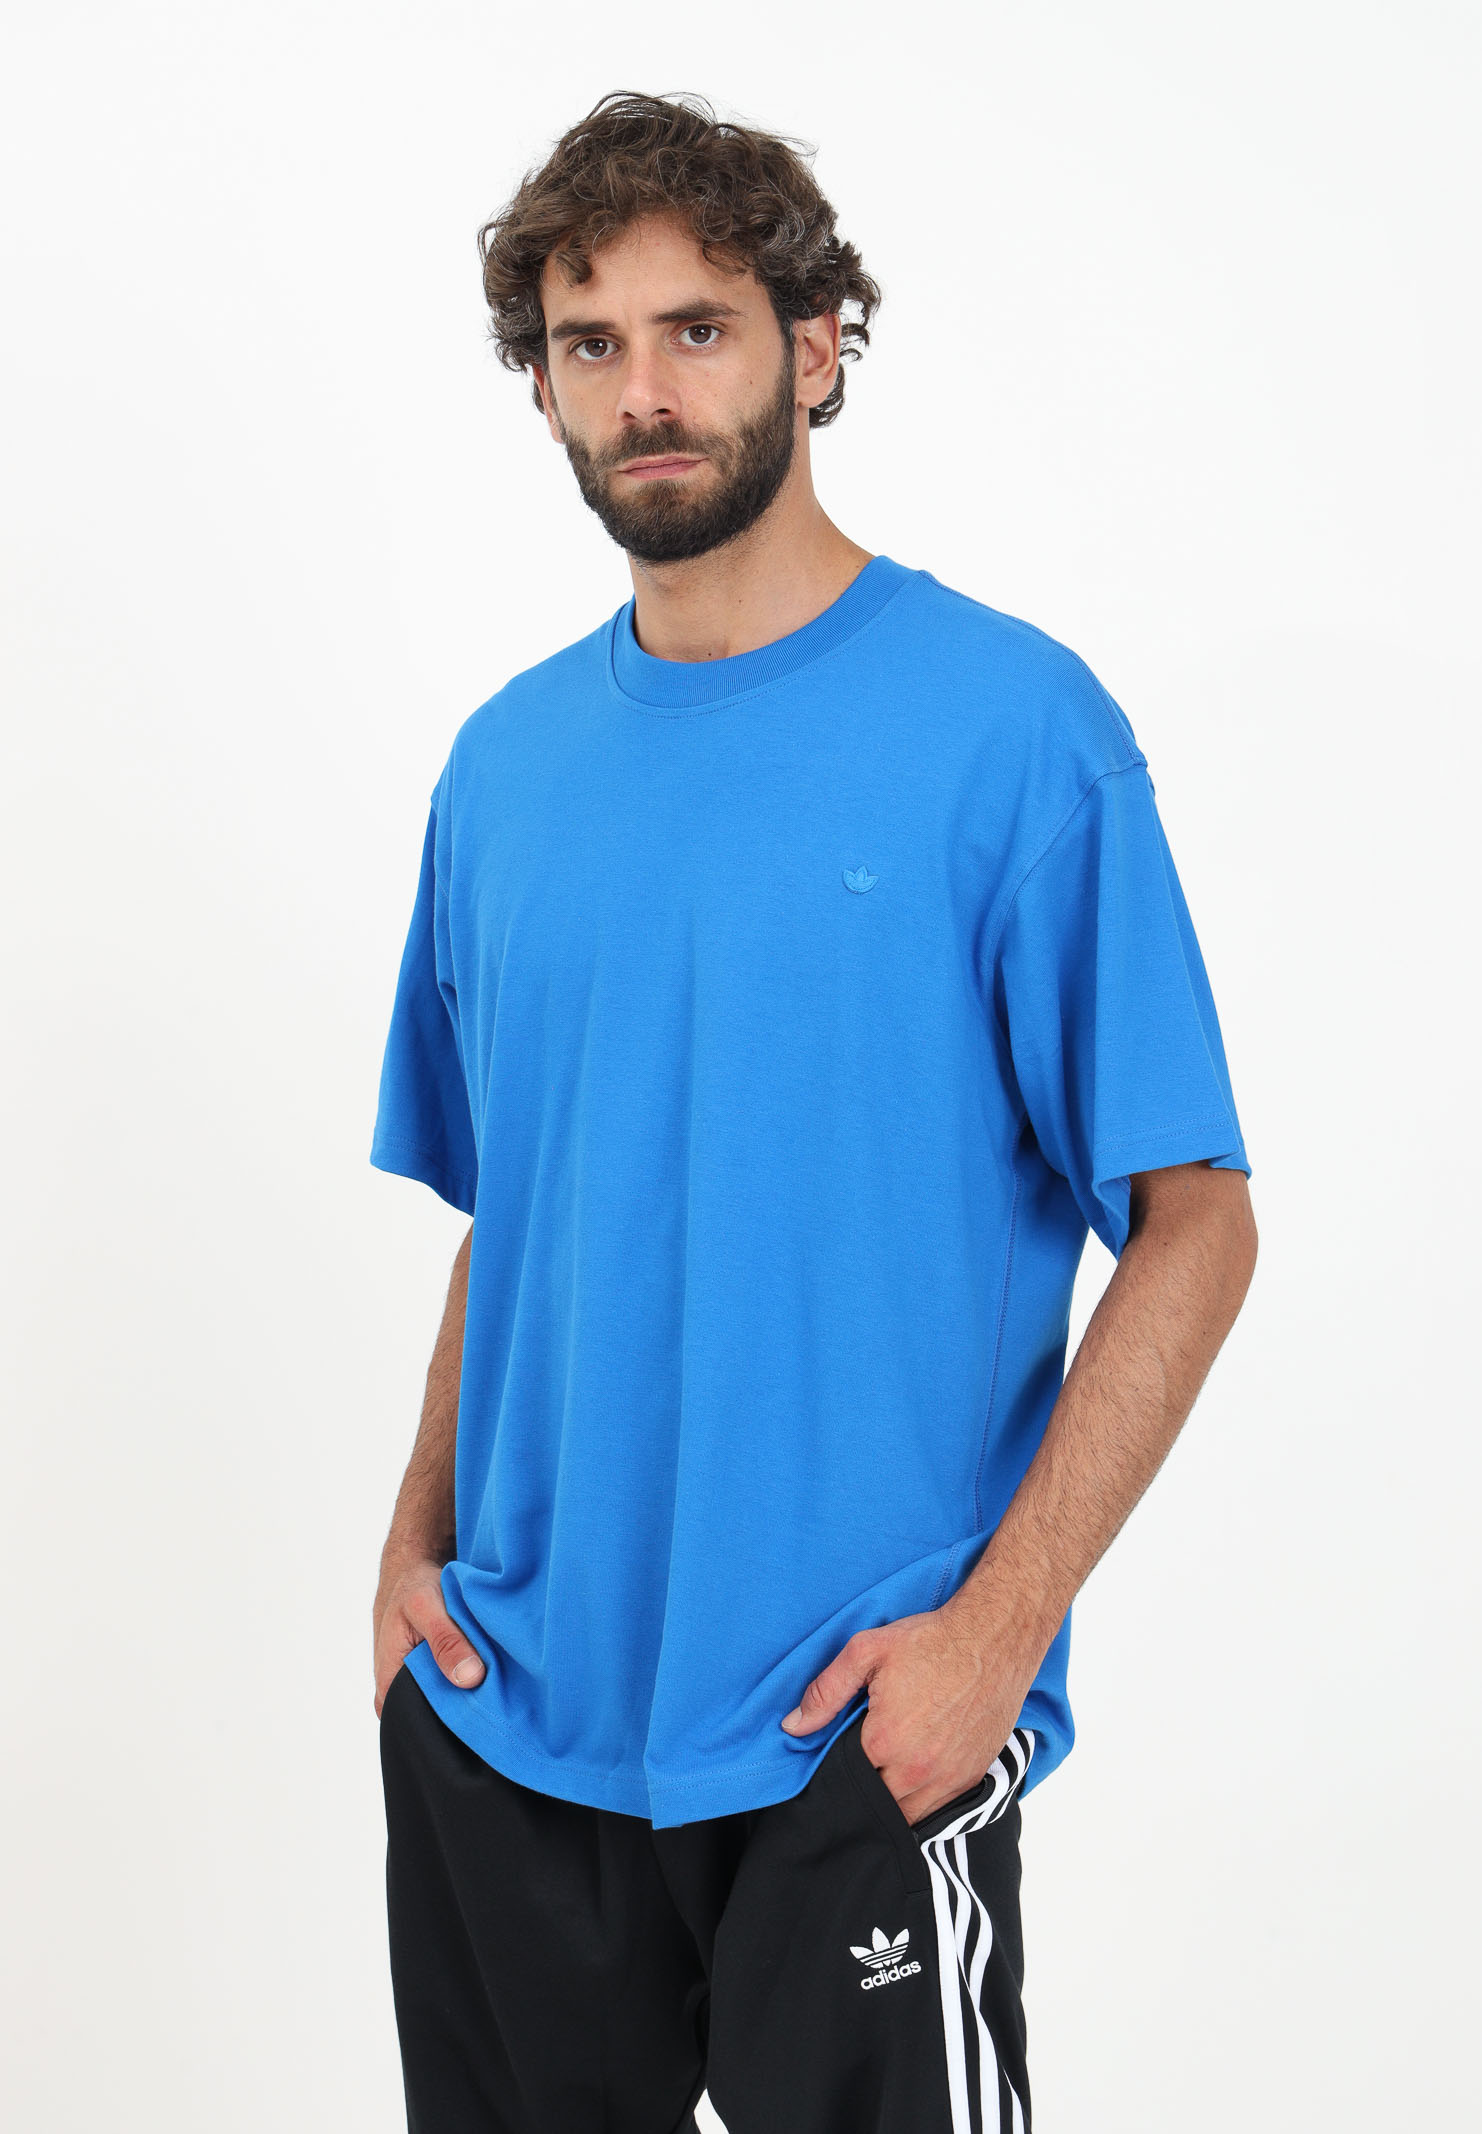 Adicolor - ADIDAS t-shirt ORIGINALS Contempo - men\'s light blue Pavidas